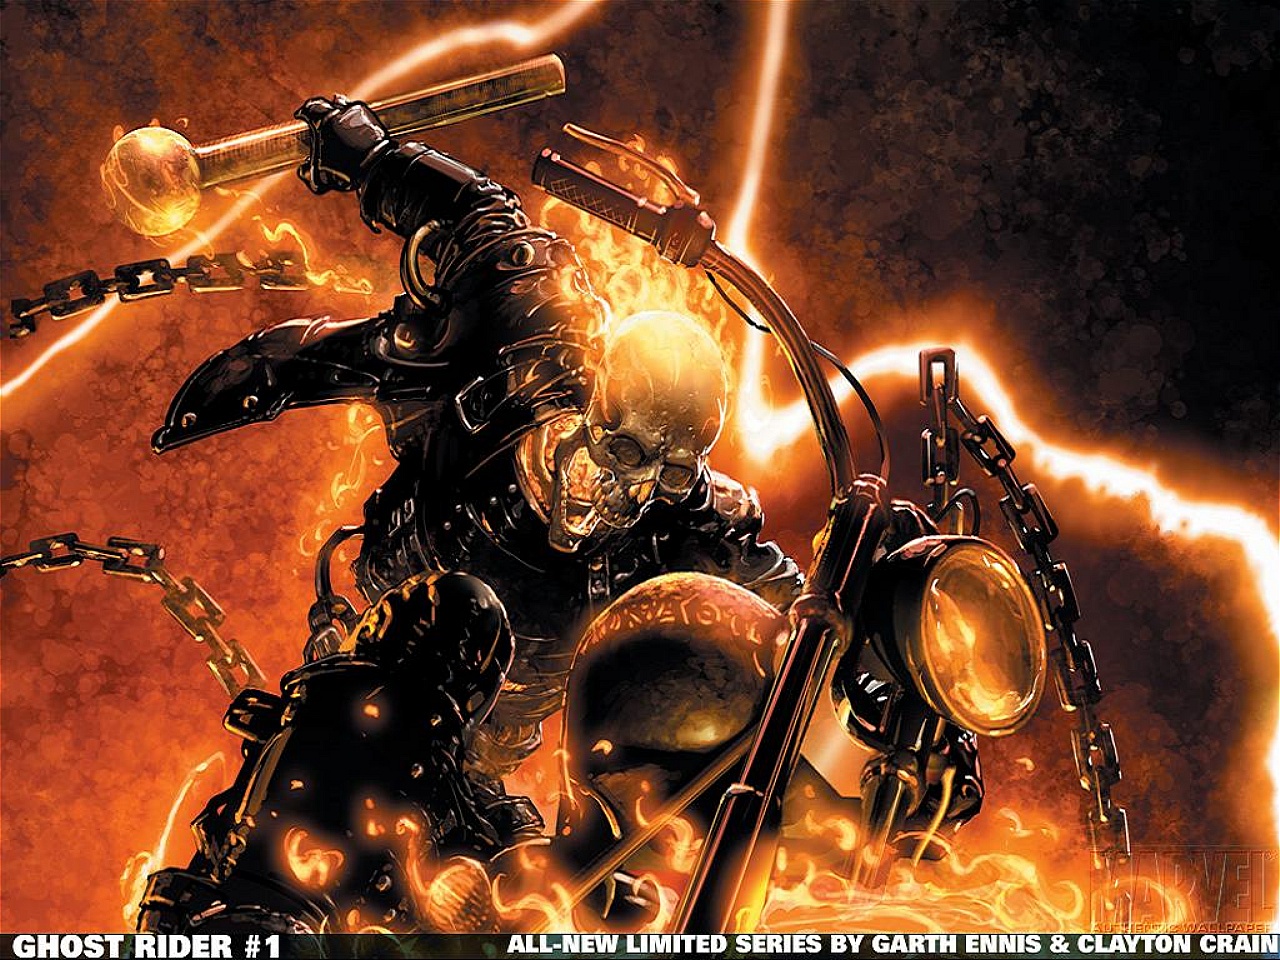 72+] Ghost Rider Wallpapers - WallpaperSafari